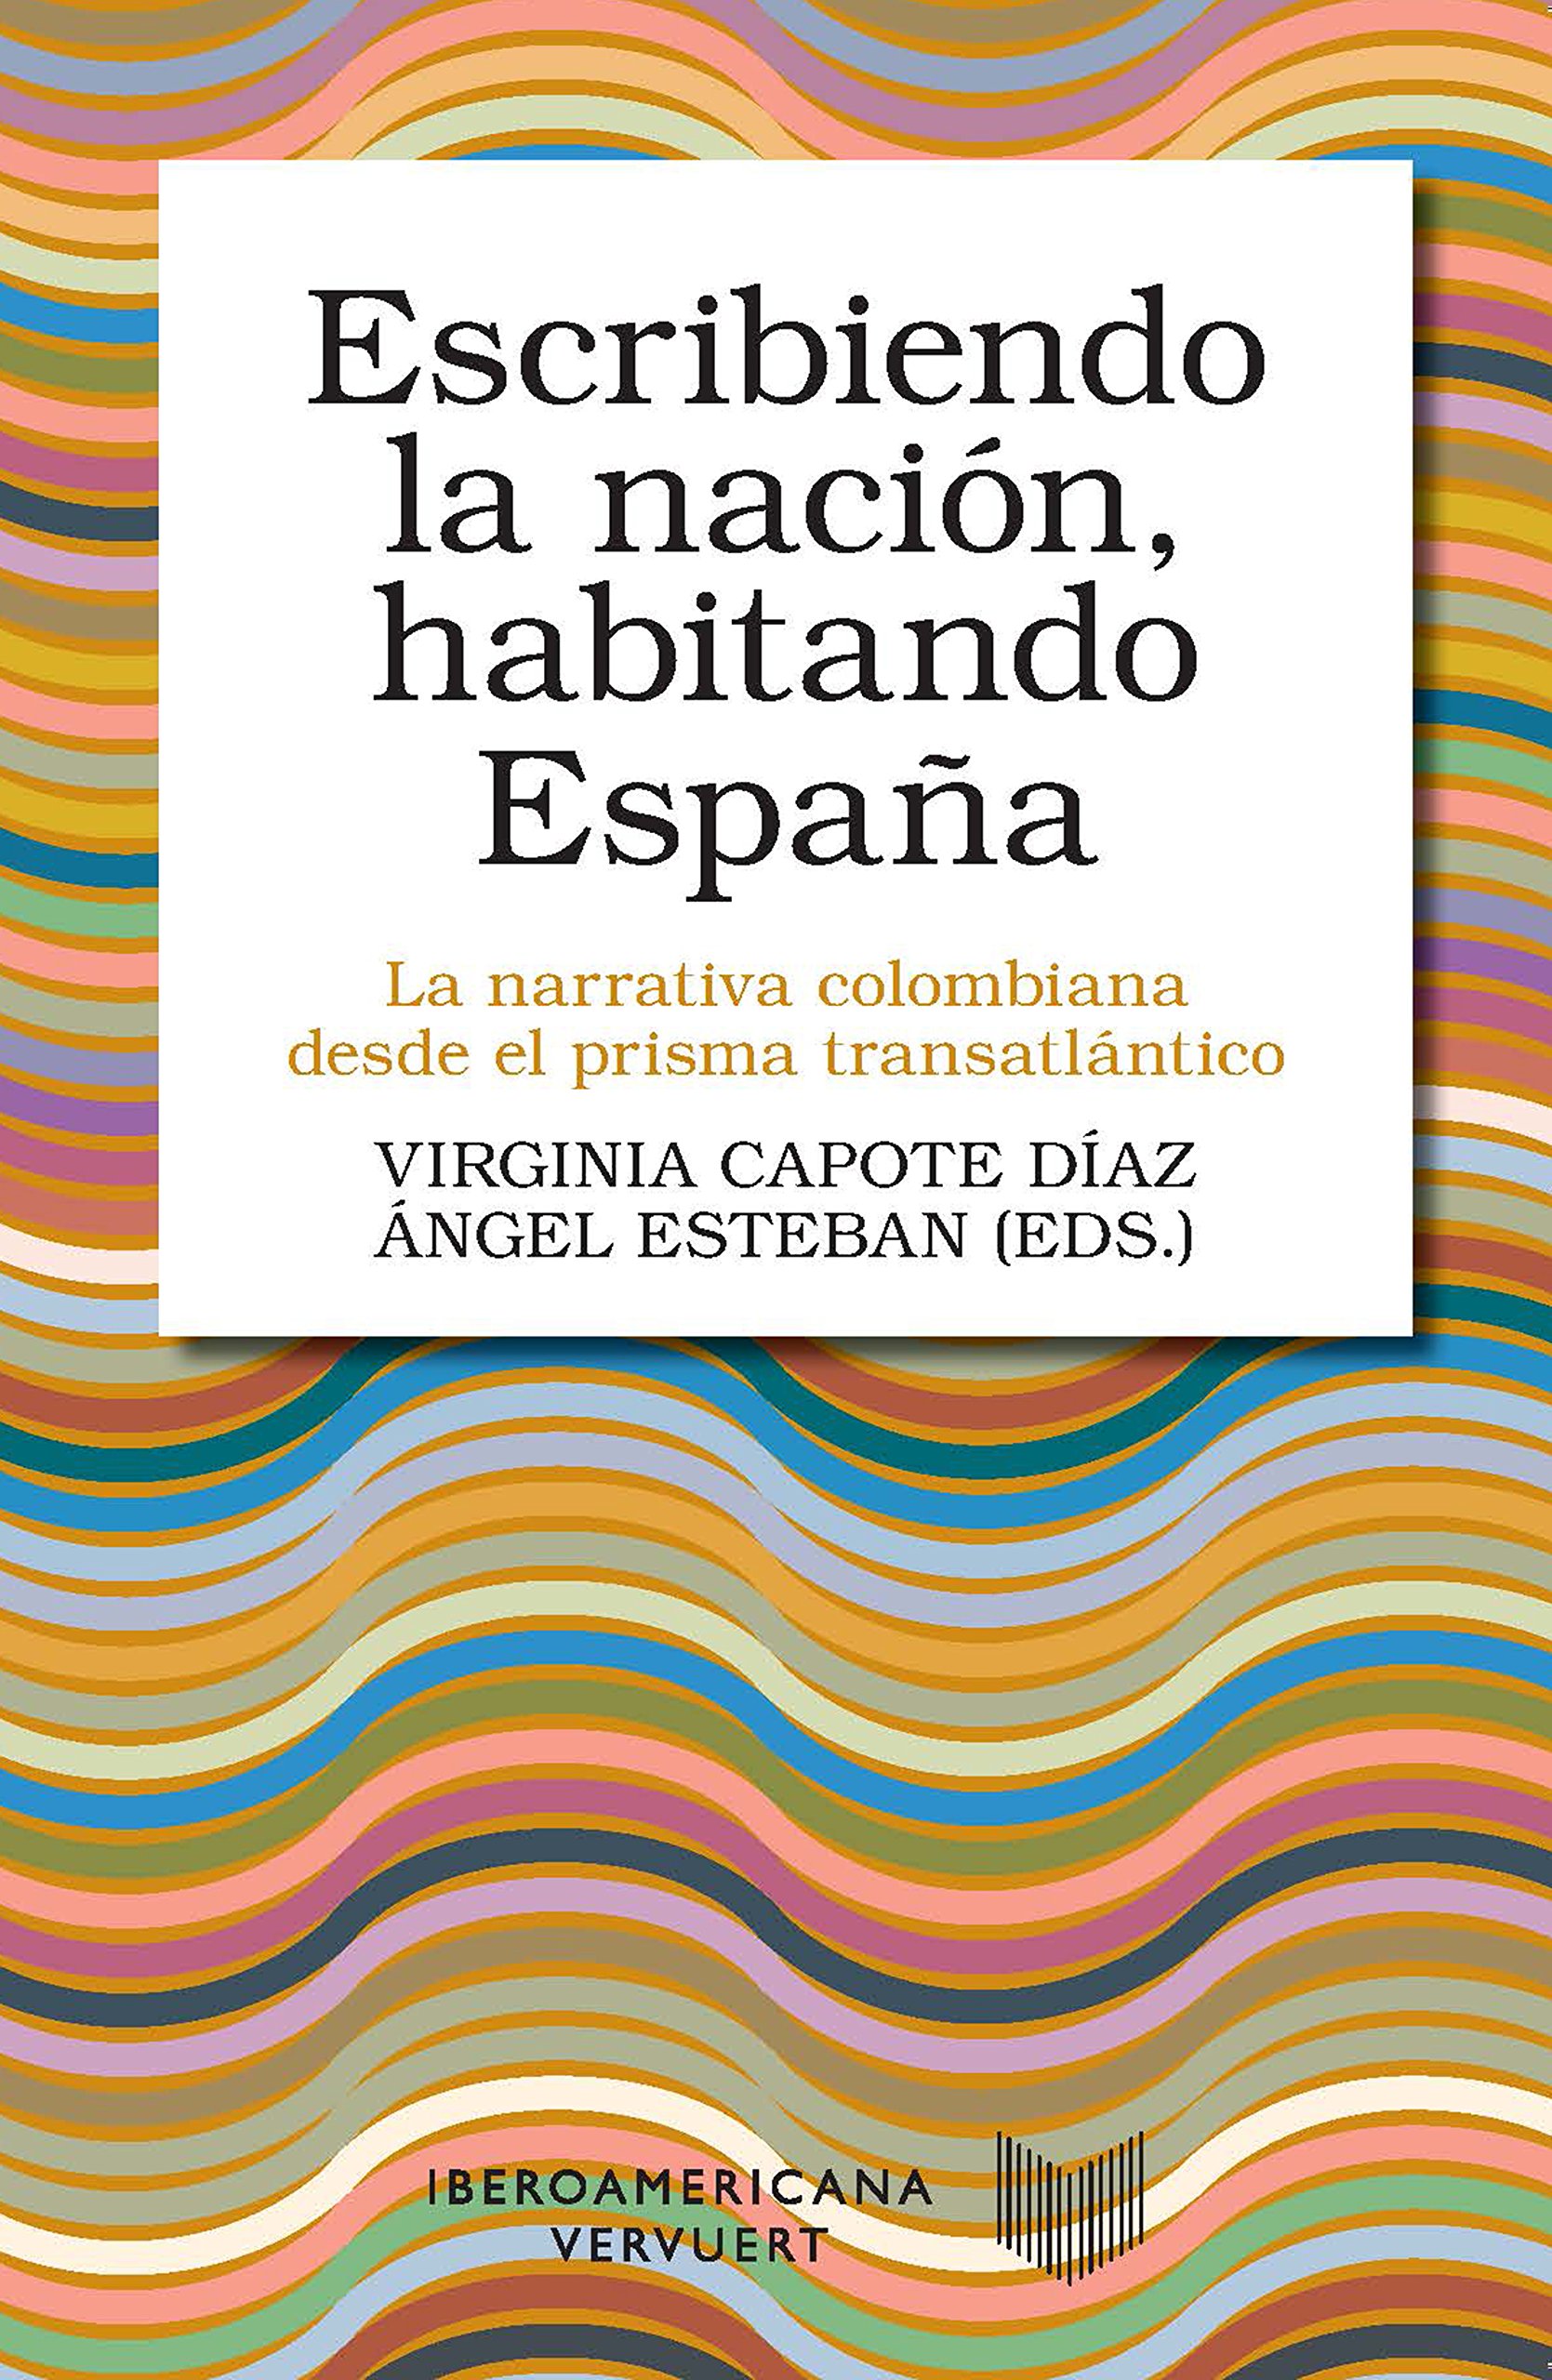 Imagen de portada del libro Escribiendo la nación, habitando España